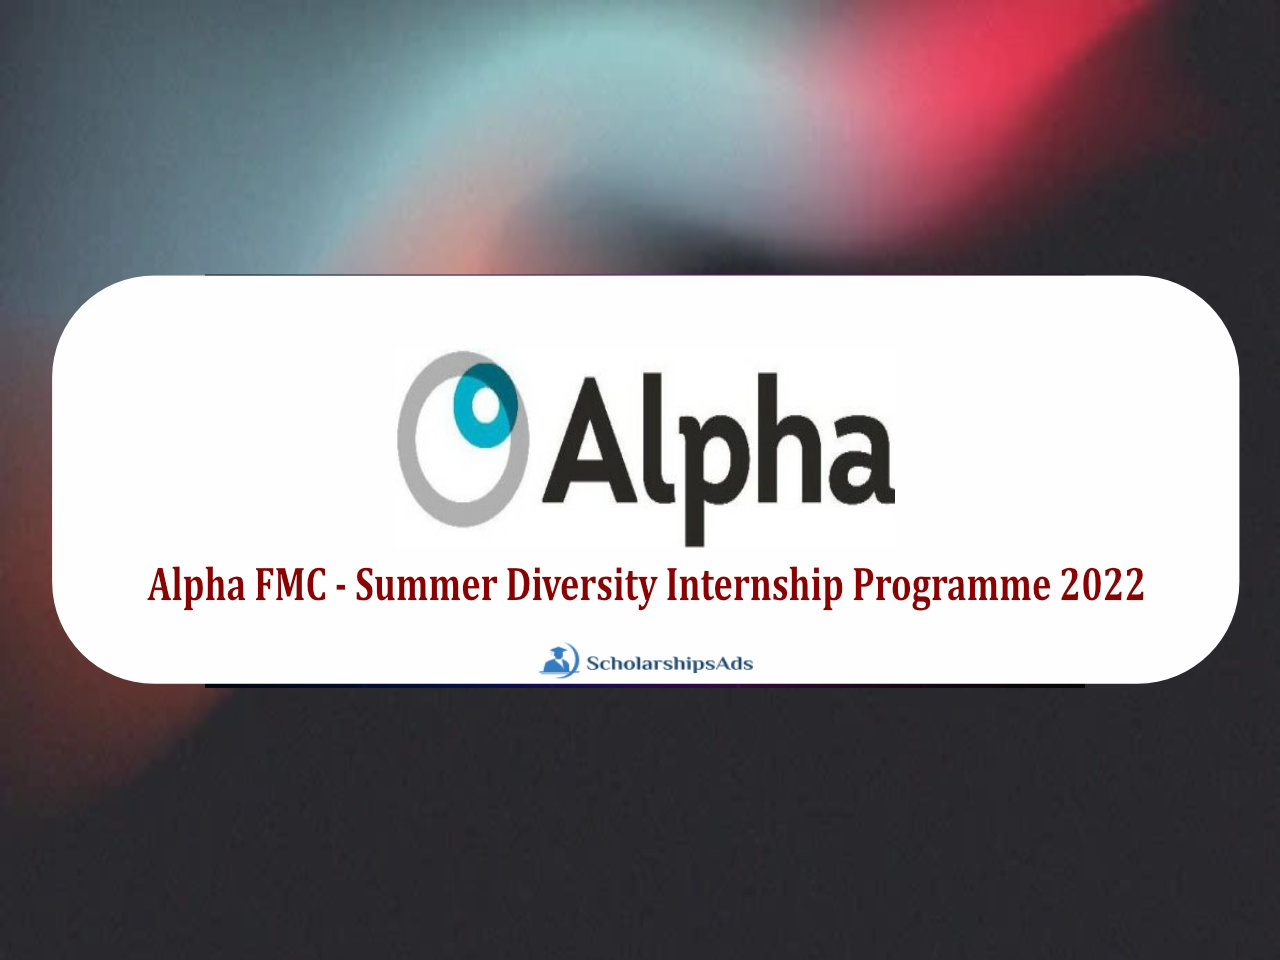 Alpha FMC Summer Diversity Internship Programme 2022